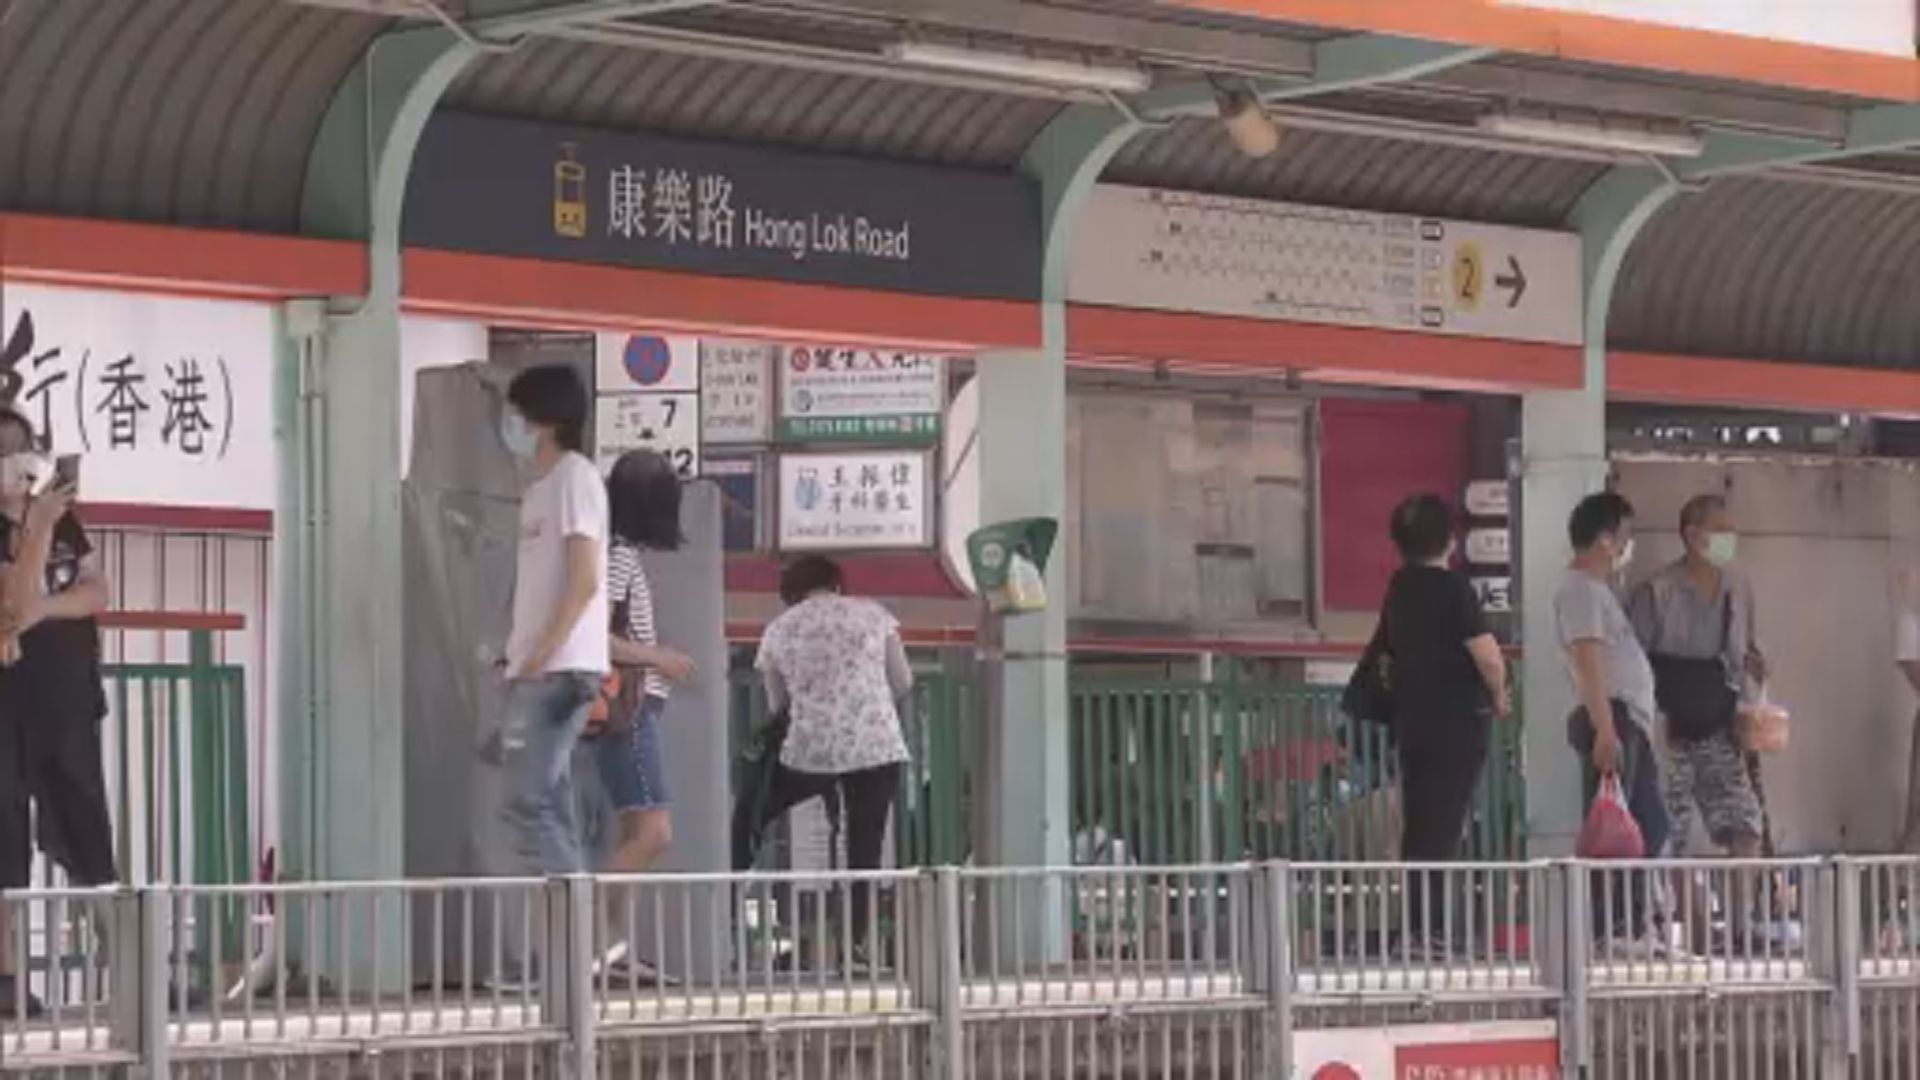 港鐵七一推抽獎送車票 同日免費坐輕鐵